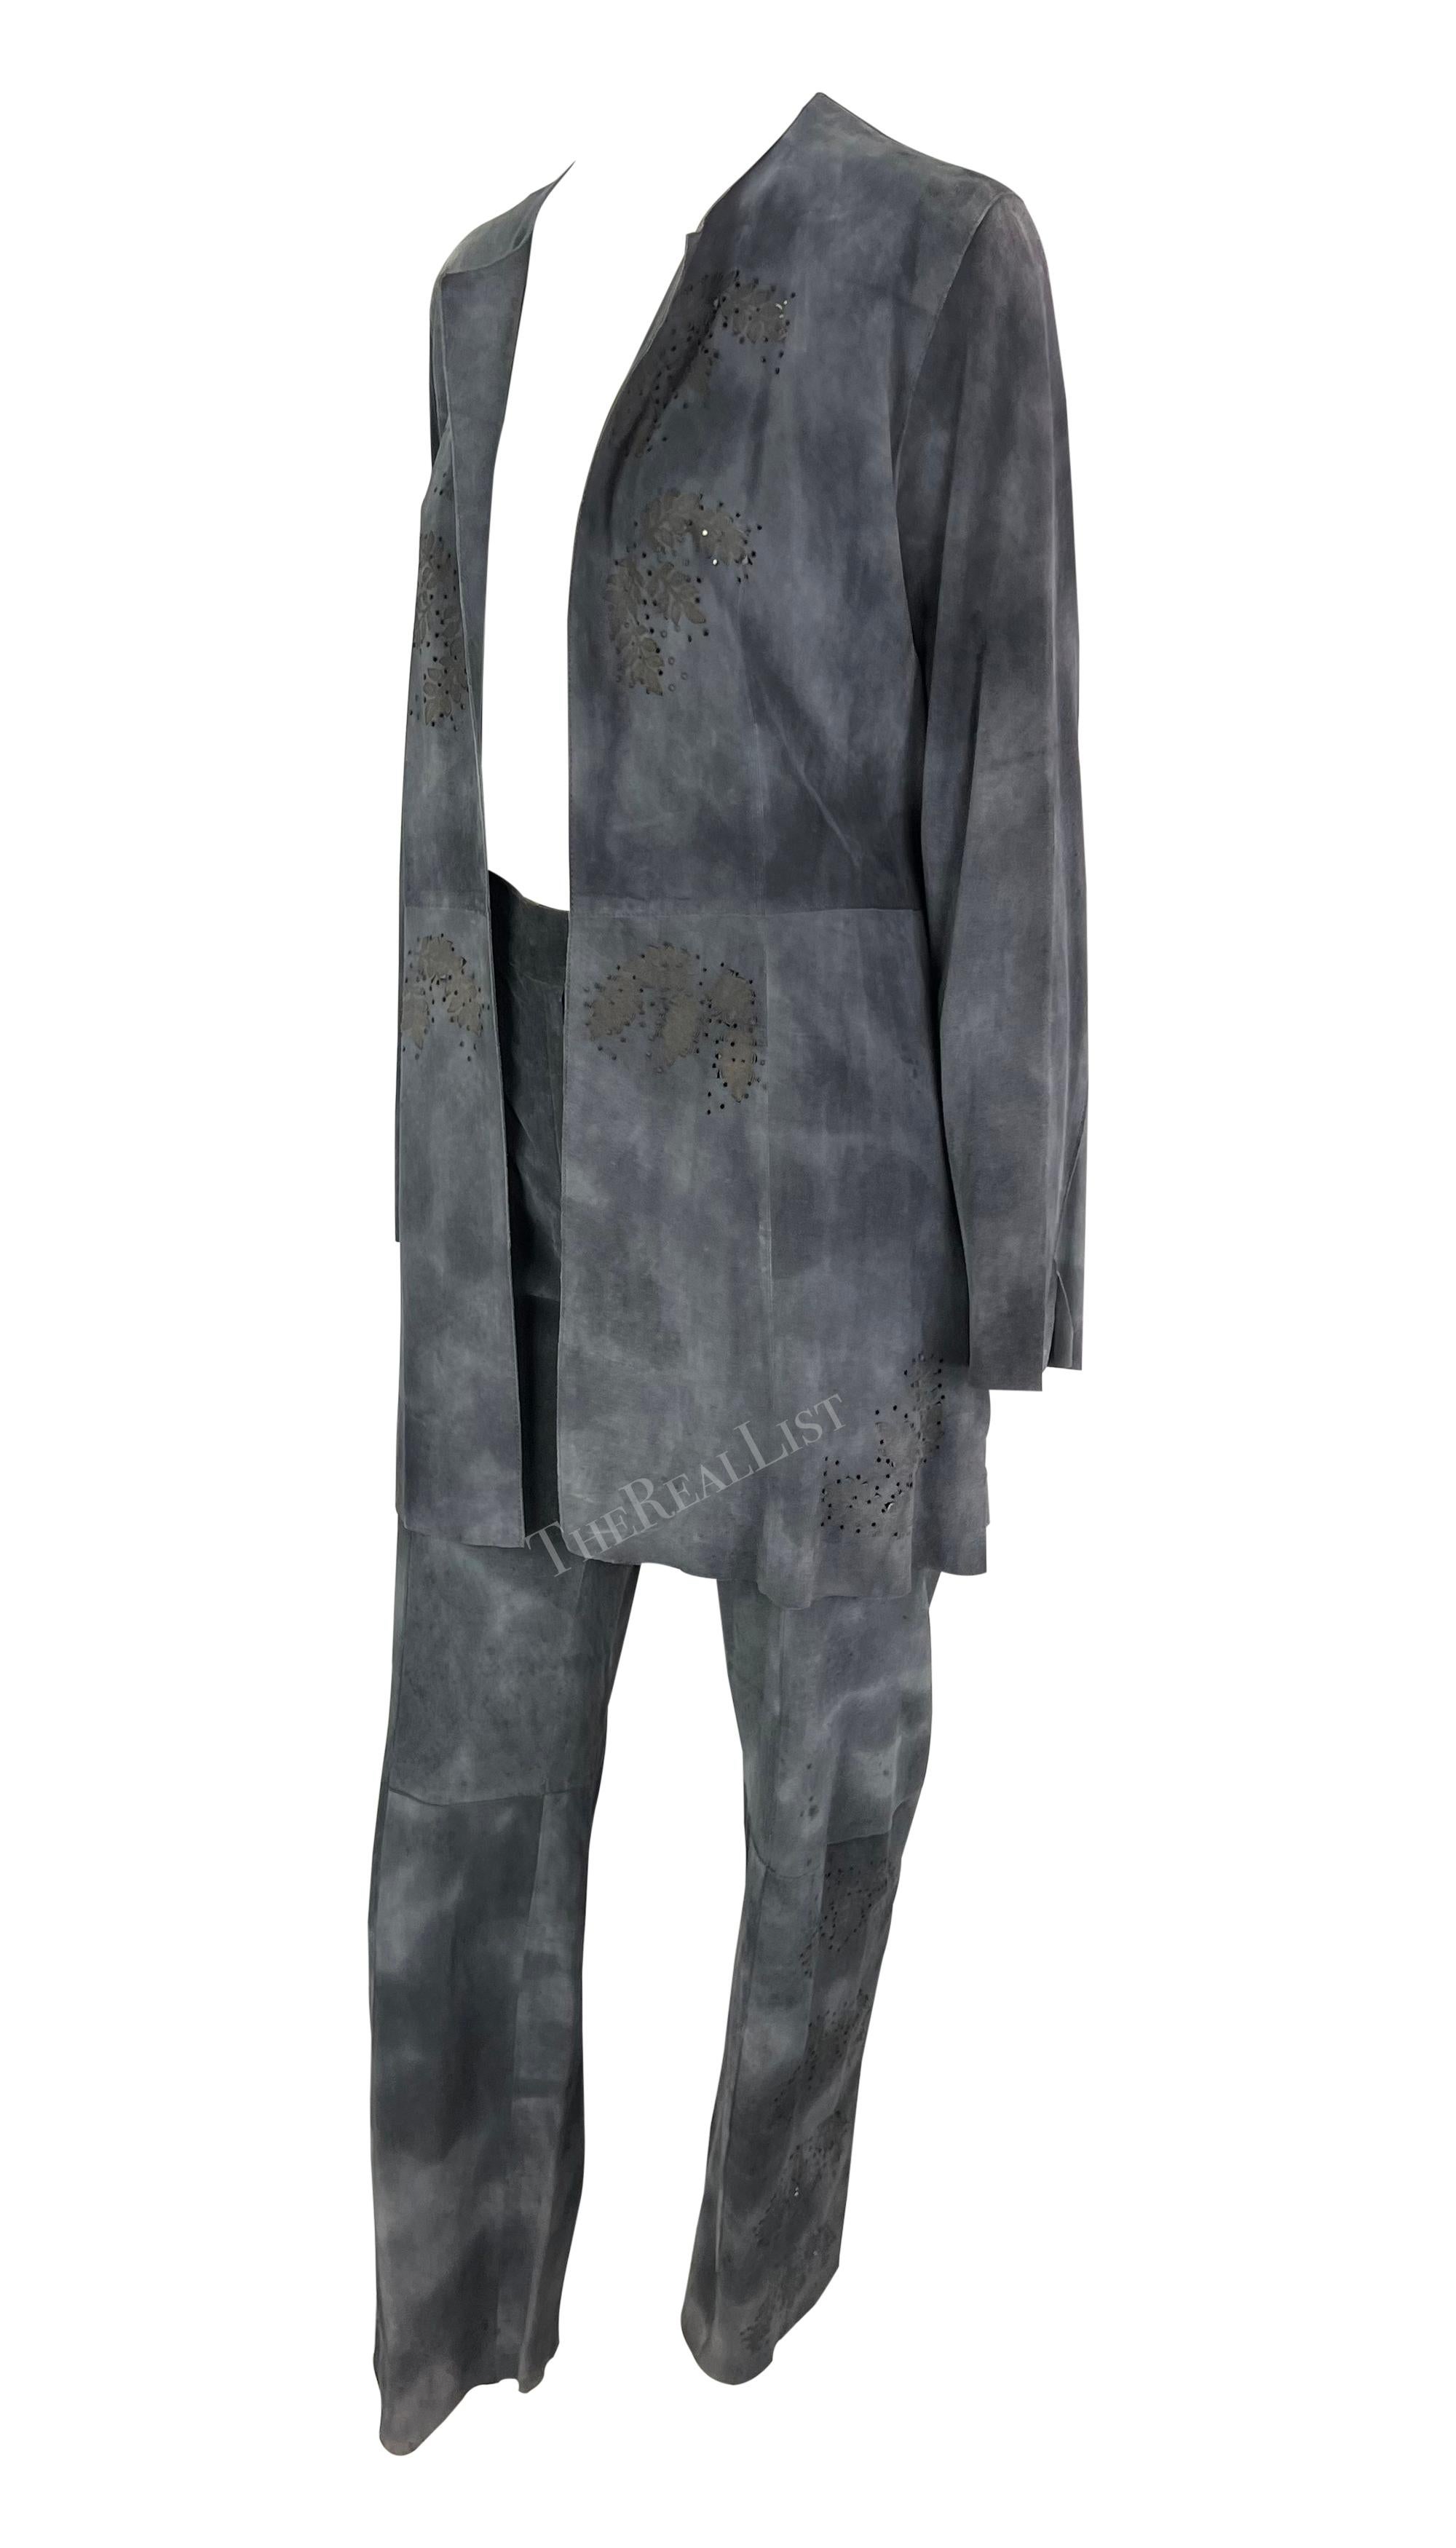 Wir präsentieren ein schickes blau-graues Wildlederhosen-Set von Fendi, entworfen von Karl Lagerfeld. Dieses Set aus den späten 1990er Jahren besteht aus einer Schlaghose und einer offenen Jacke, die beide aus absichtlich in Mitleidenschaft